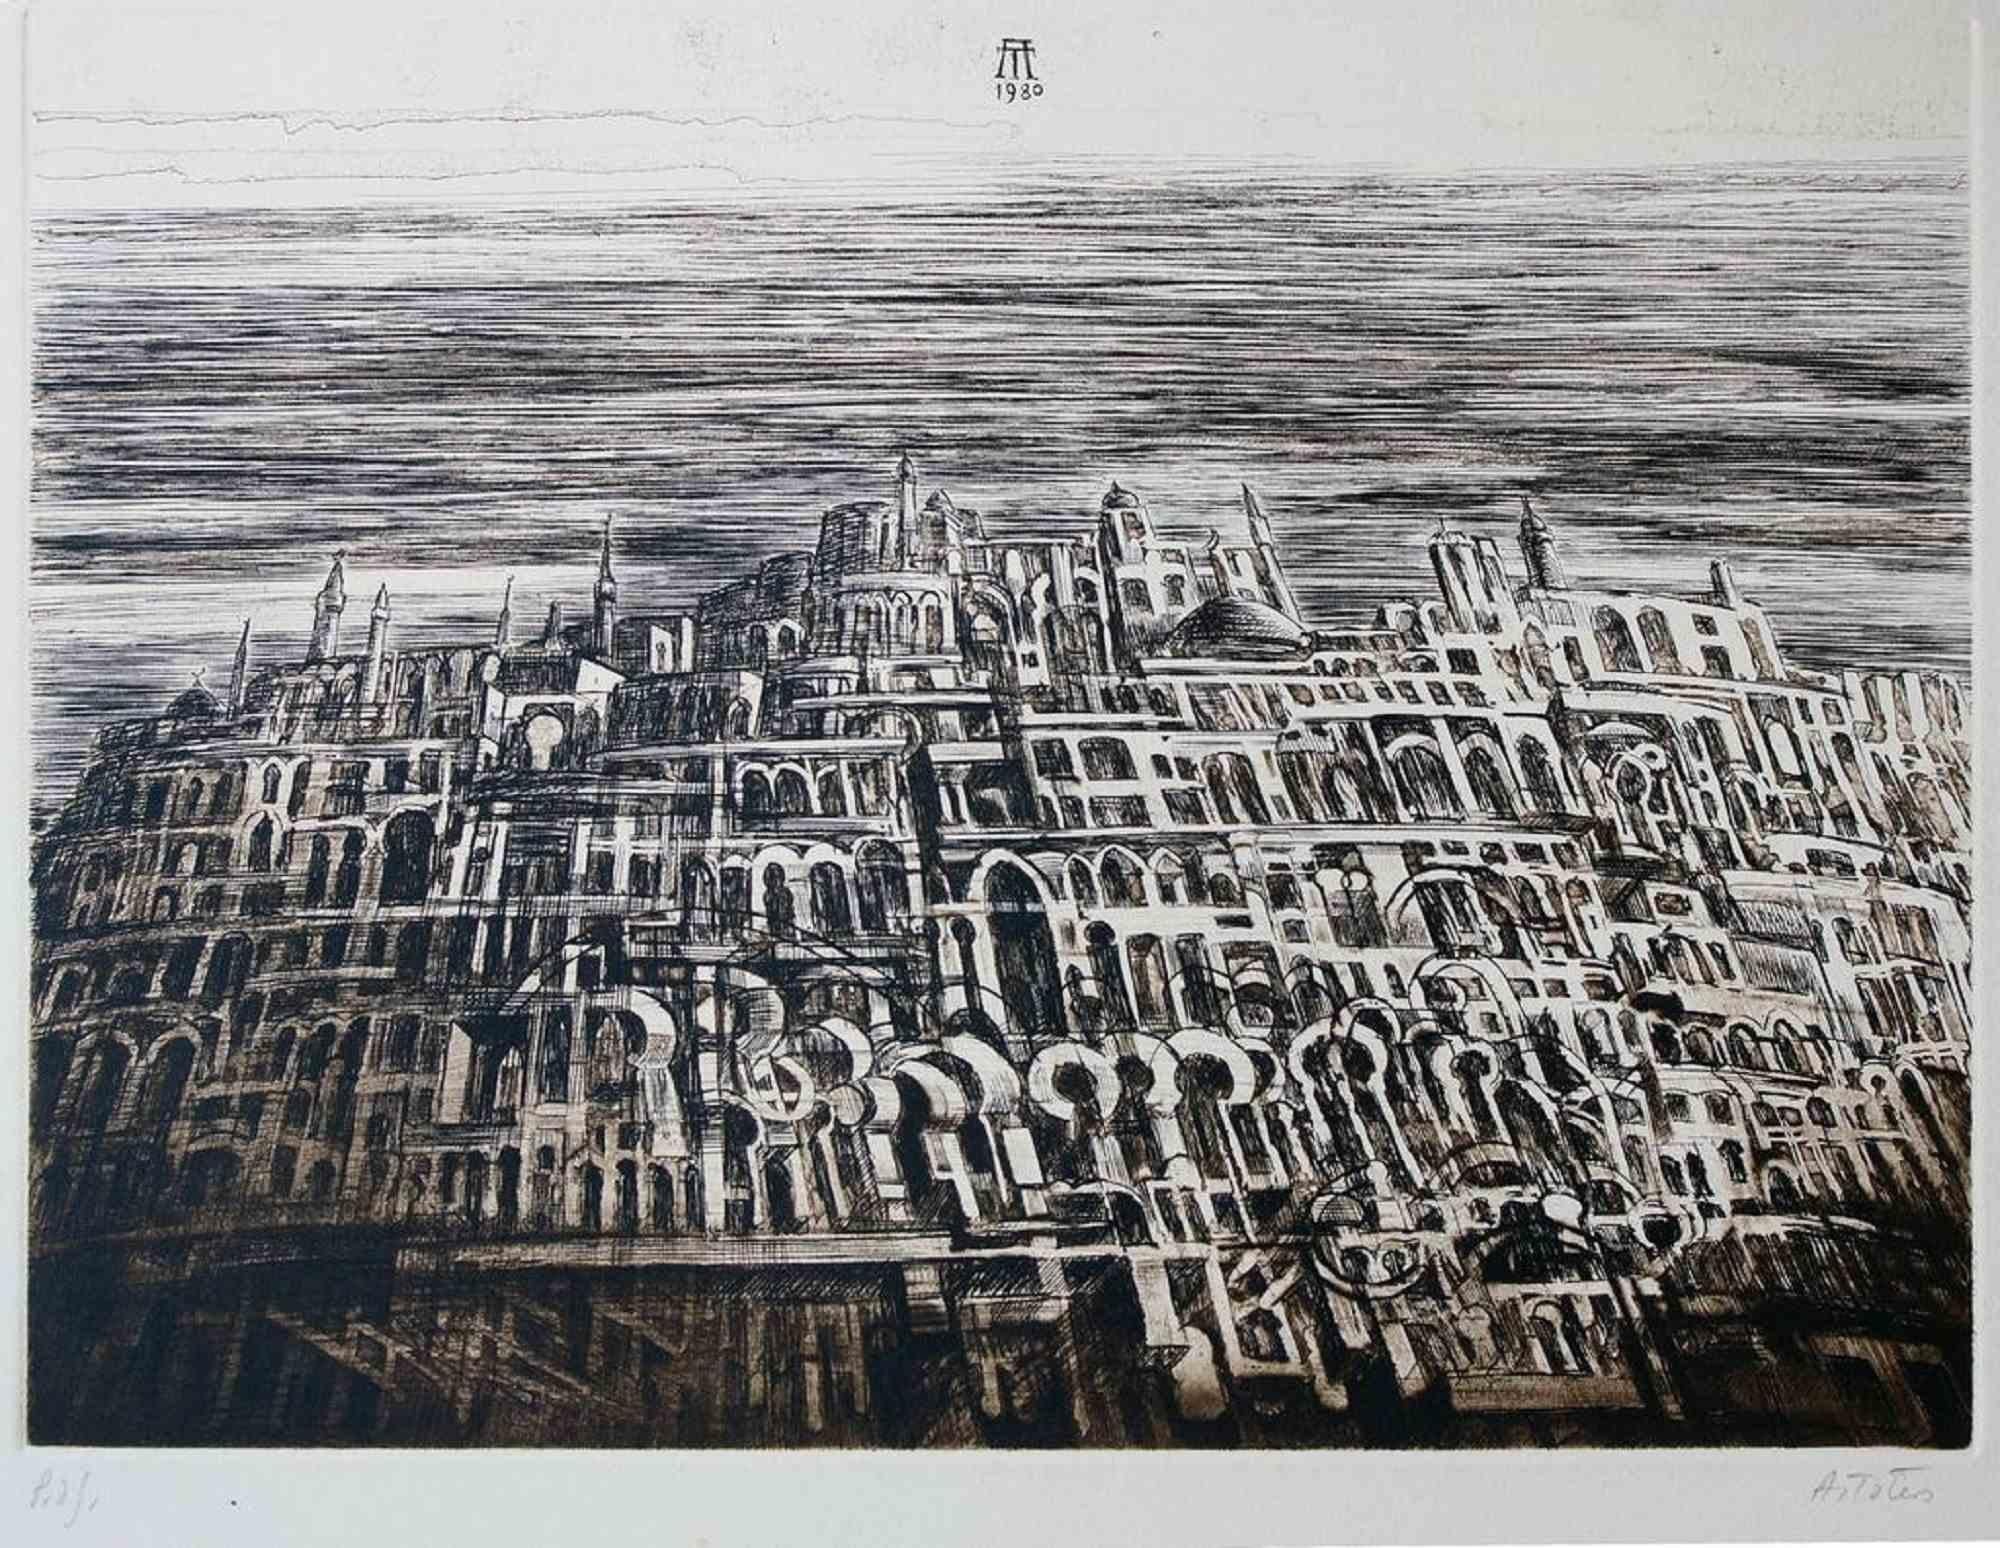 Antonio De Totero Landscape Print - Castle - Etching by Antonio de Totero - 1980s